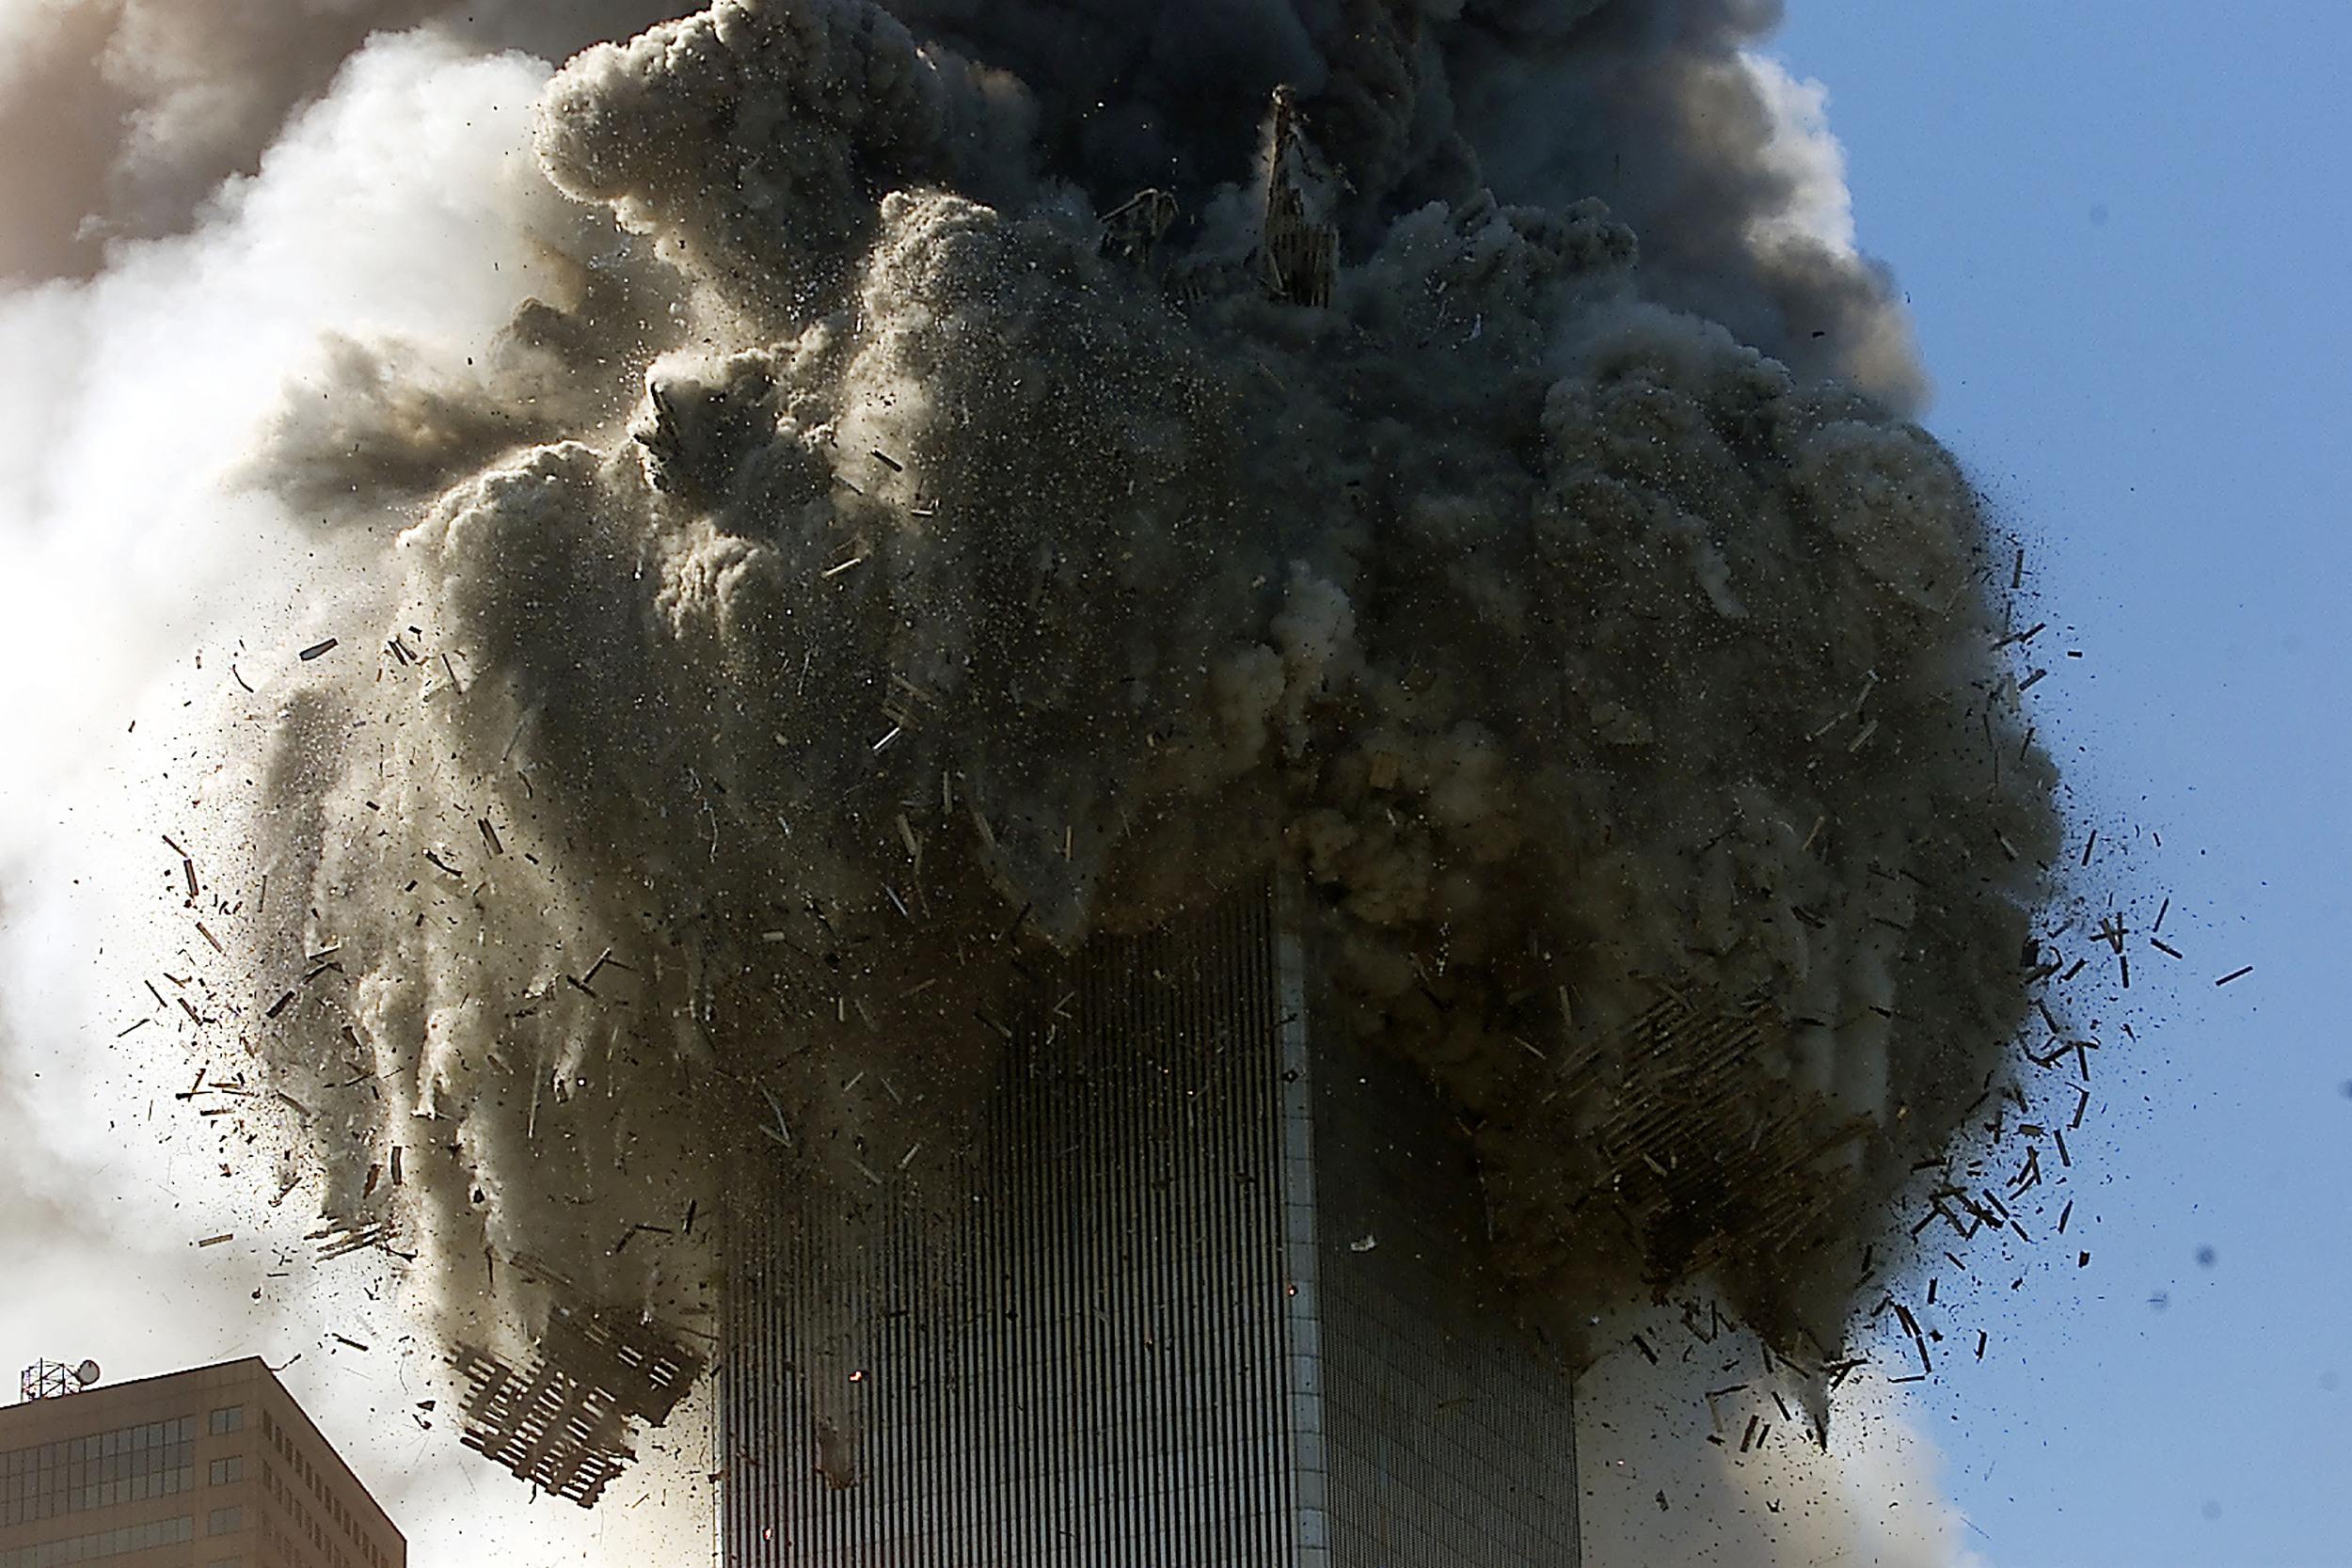 2001年9月11日,美国纽约,911恐怖袭击事件中世界贸易中心双子塔被飞机